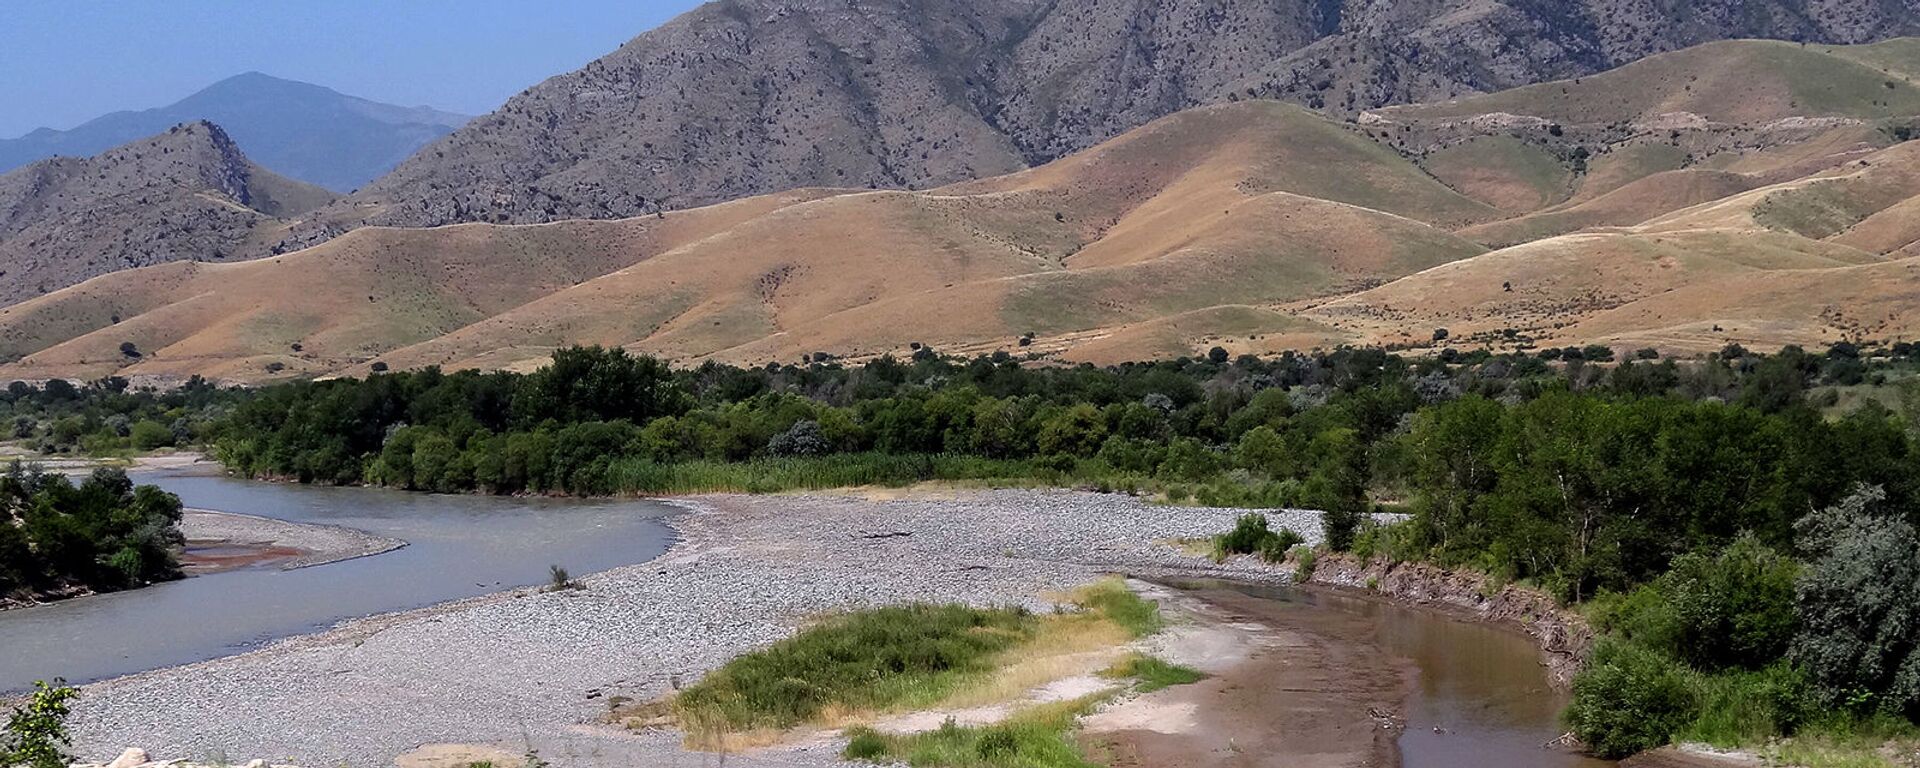 Արաքս գետը Արցախի, Իրանի ու Ադրբեջանի սահմանին - Sputnik Արմենիա, 1920, 05.10.2021